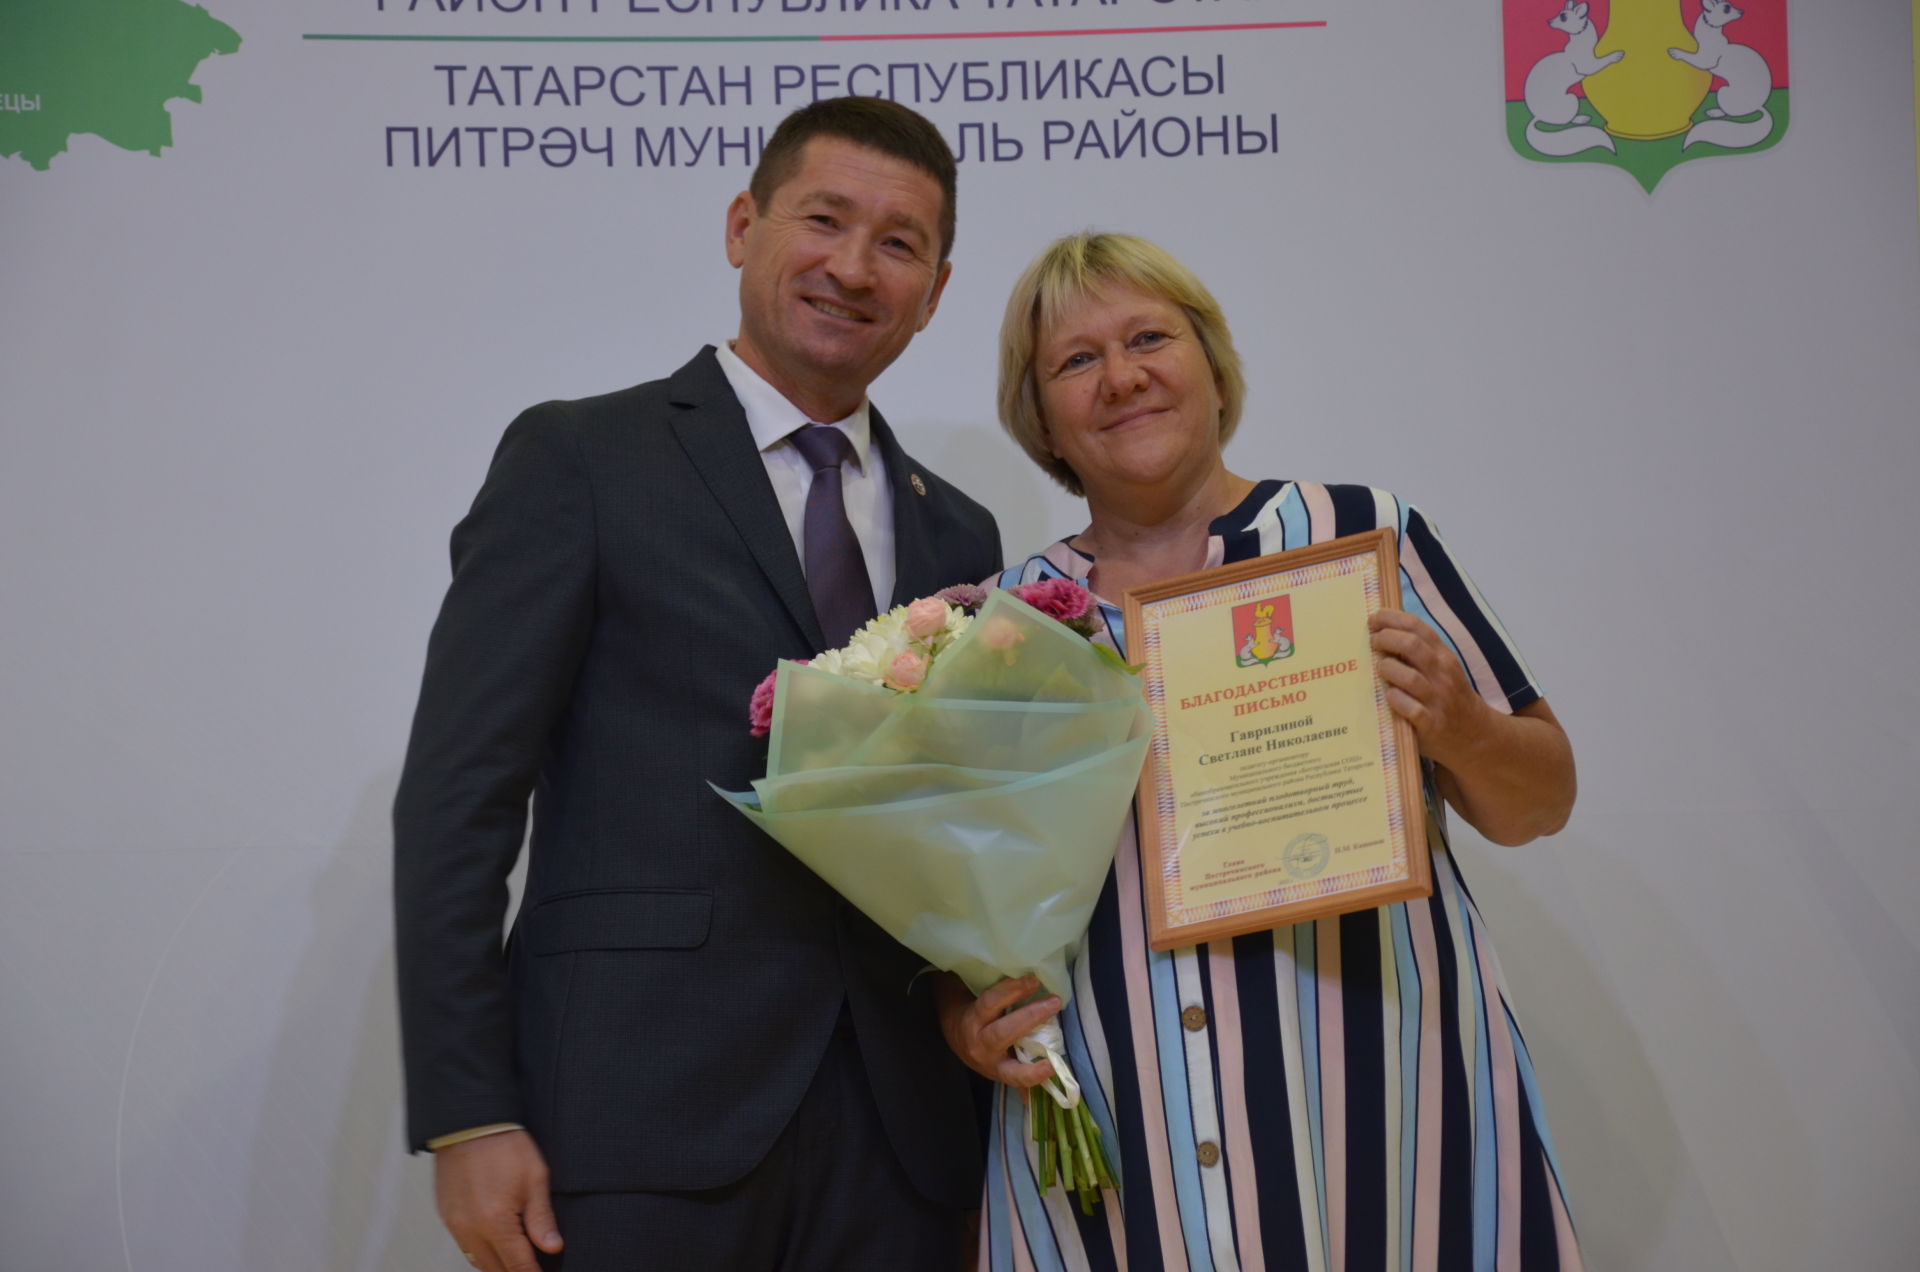 Наградили лучших педагогов Пестречинского района